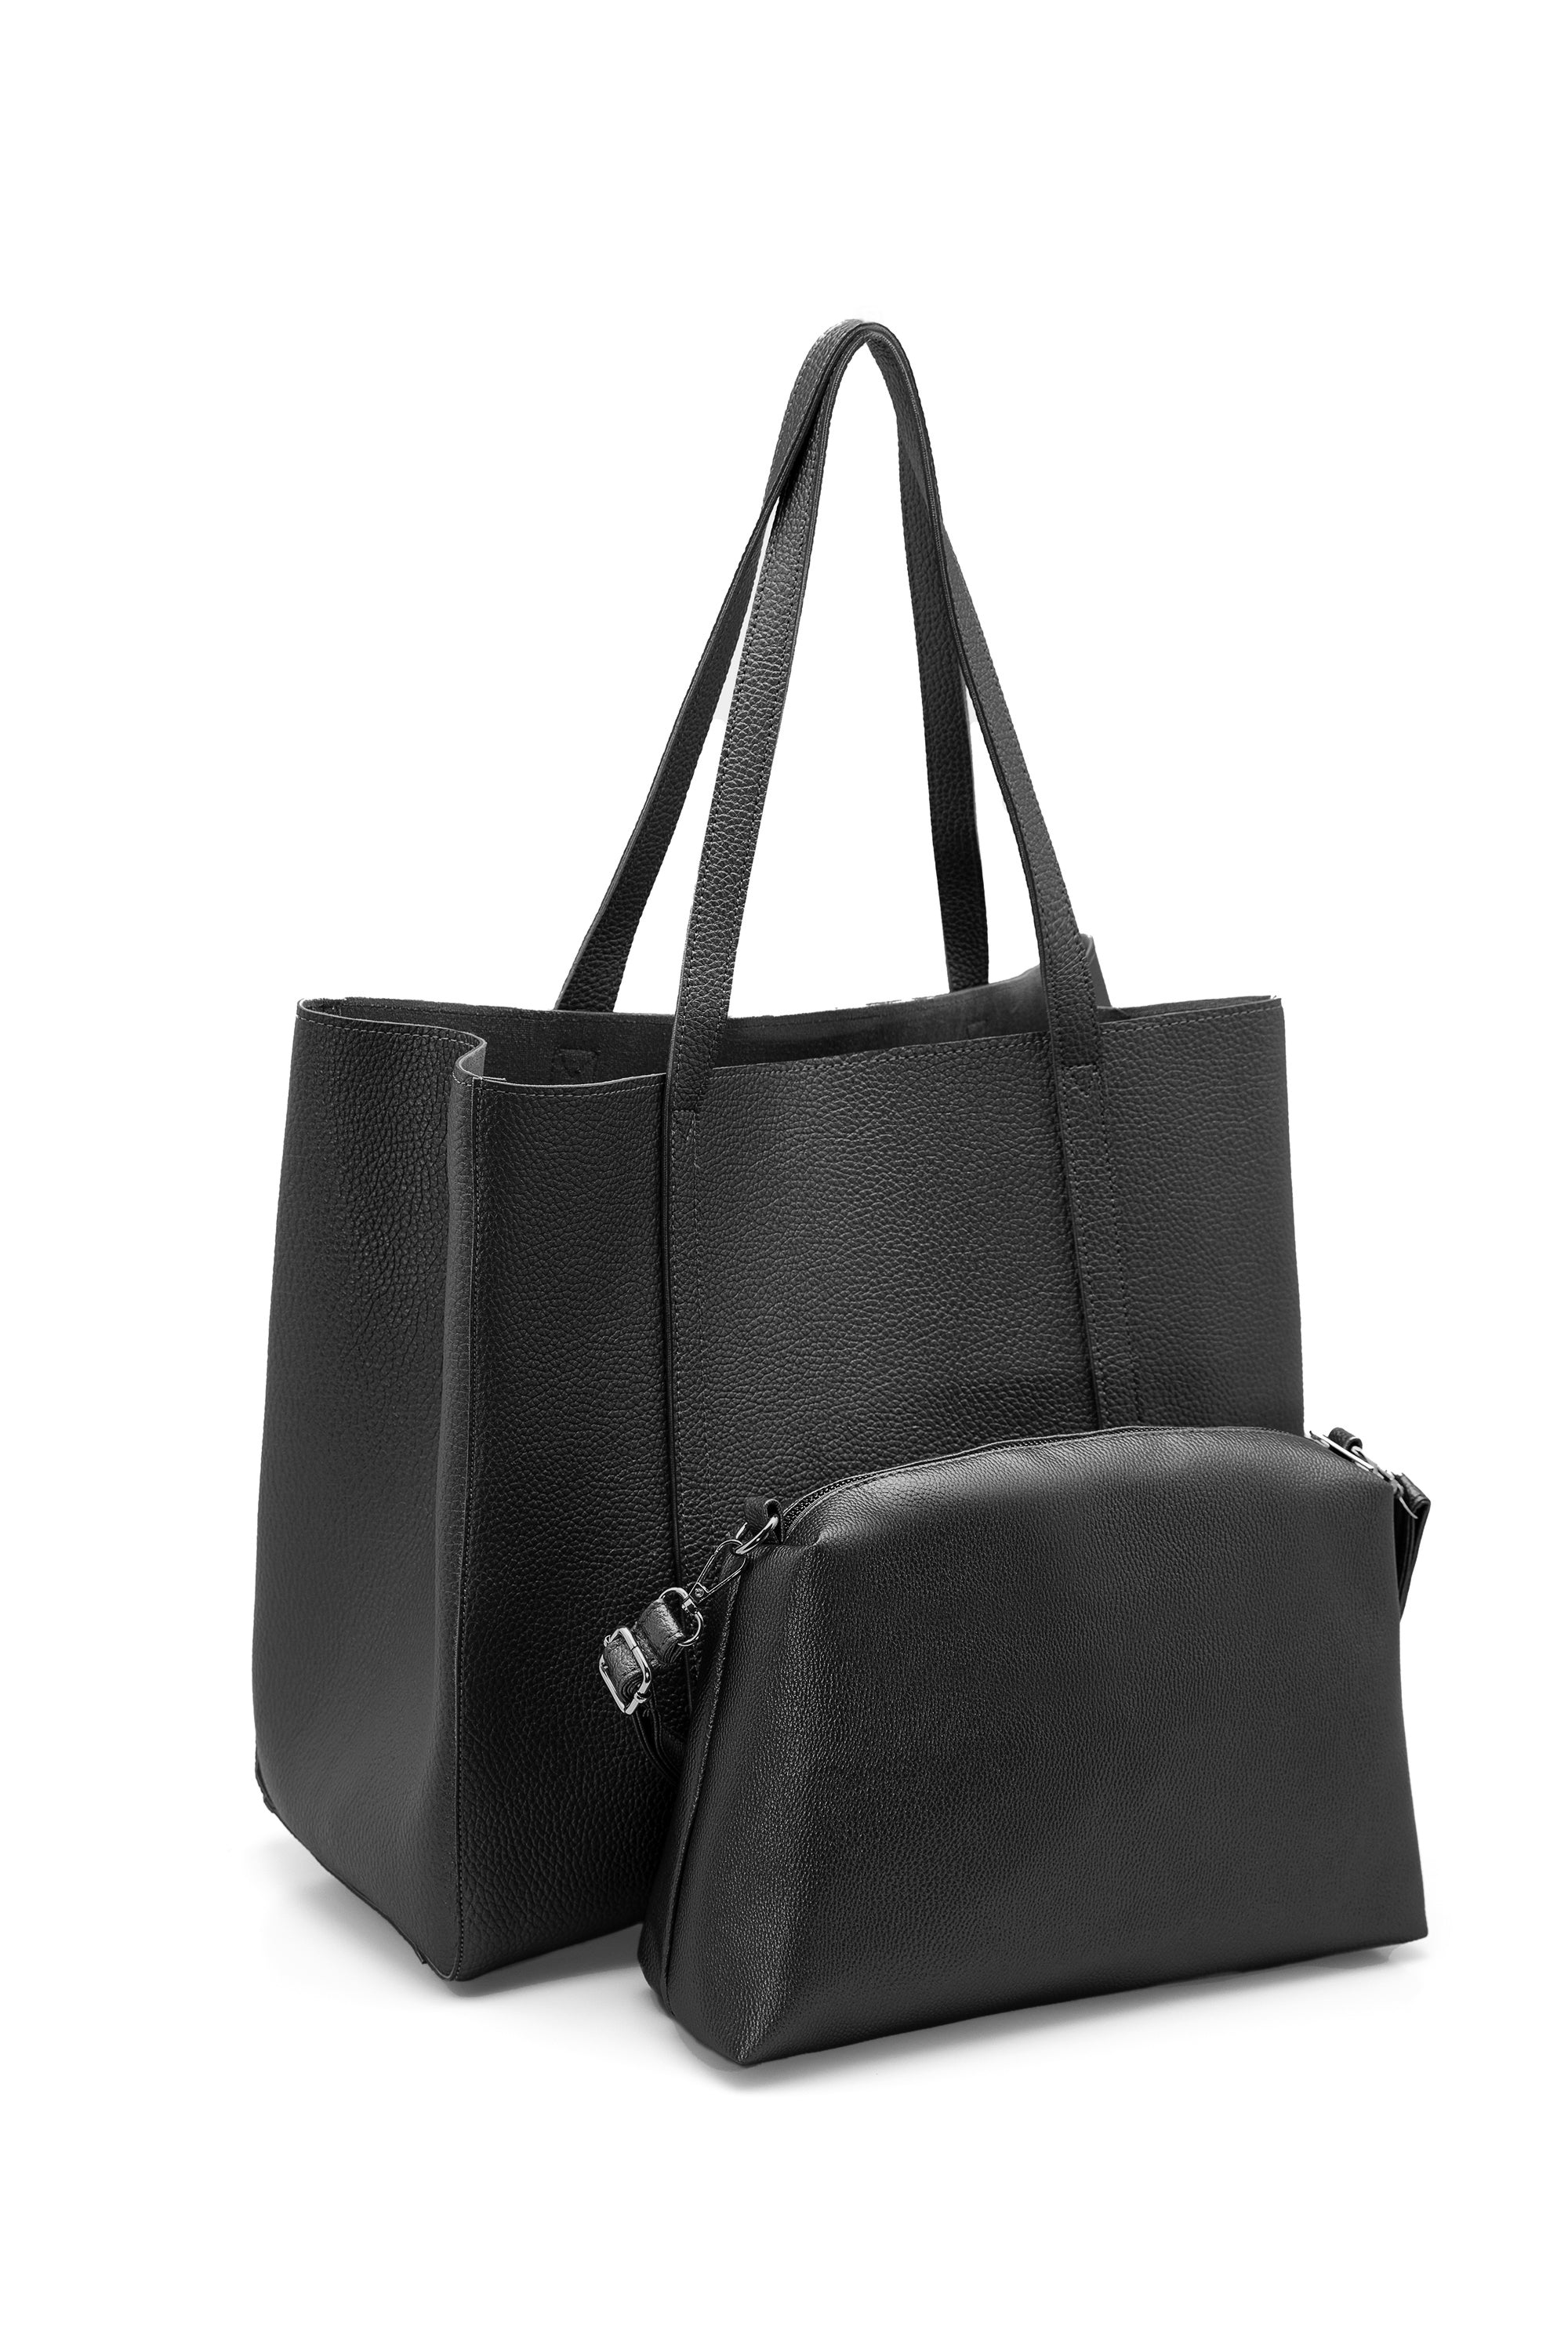 Vegan Leather Weekend Bag - Black